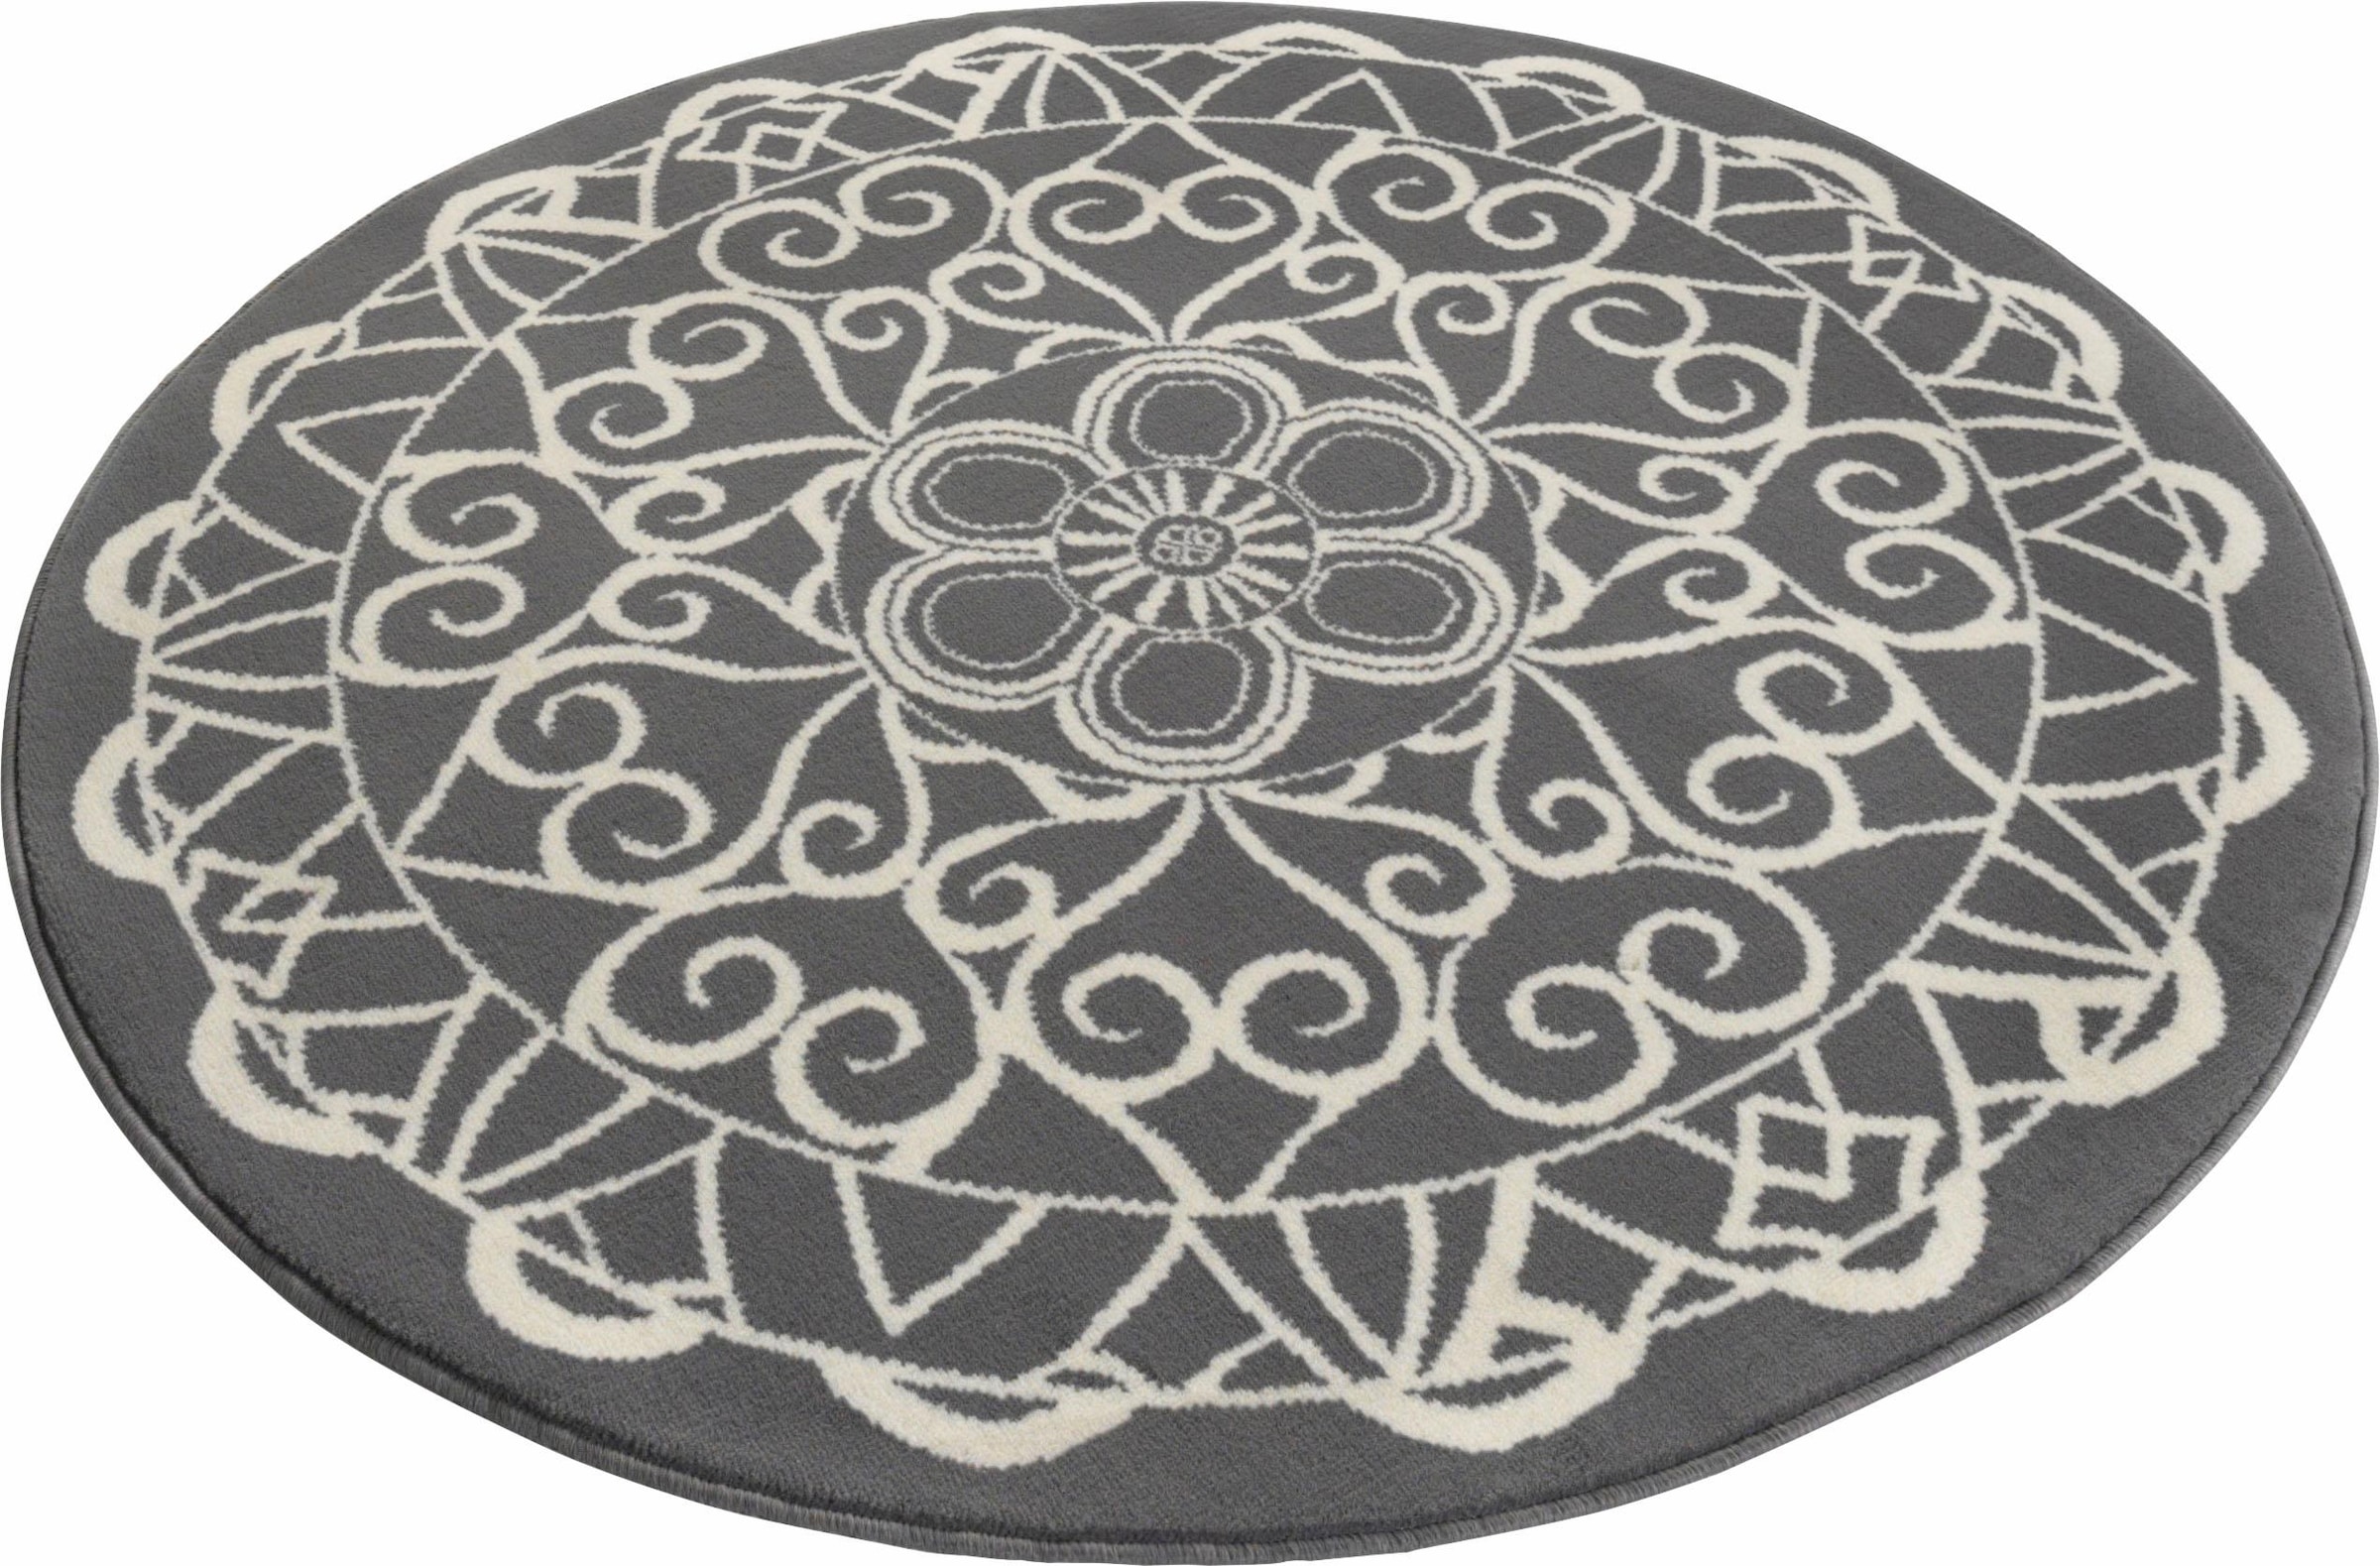 HANSE Home Teppich »Mandala 1«, rund, Kurzflor, Mandala Design, Graphisches Muster, Robust, Pflegeleicht